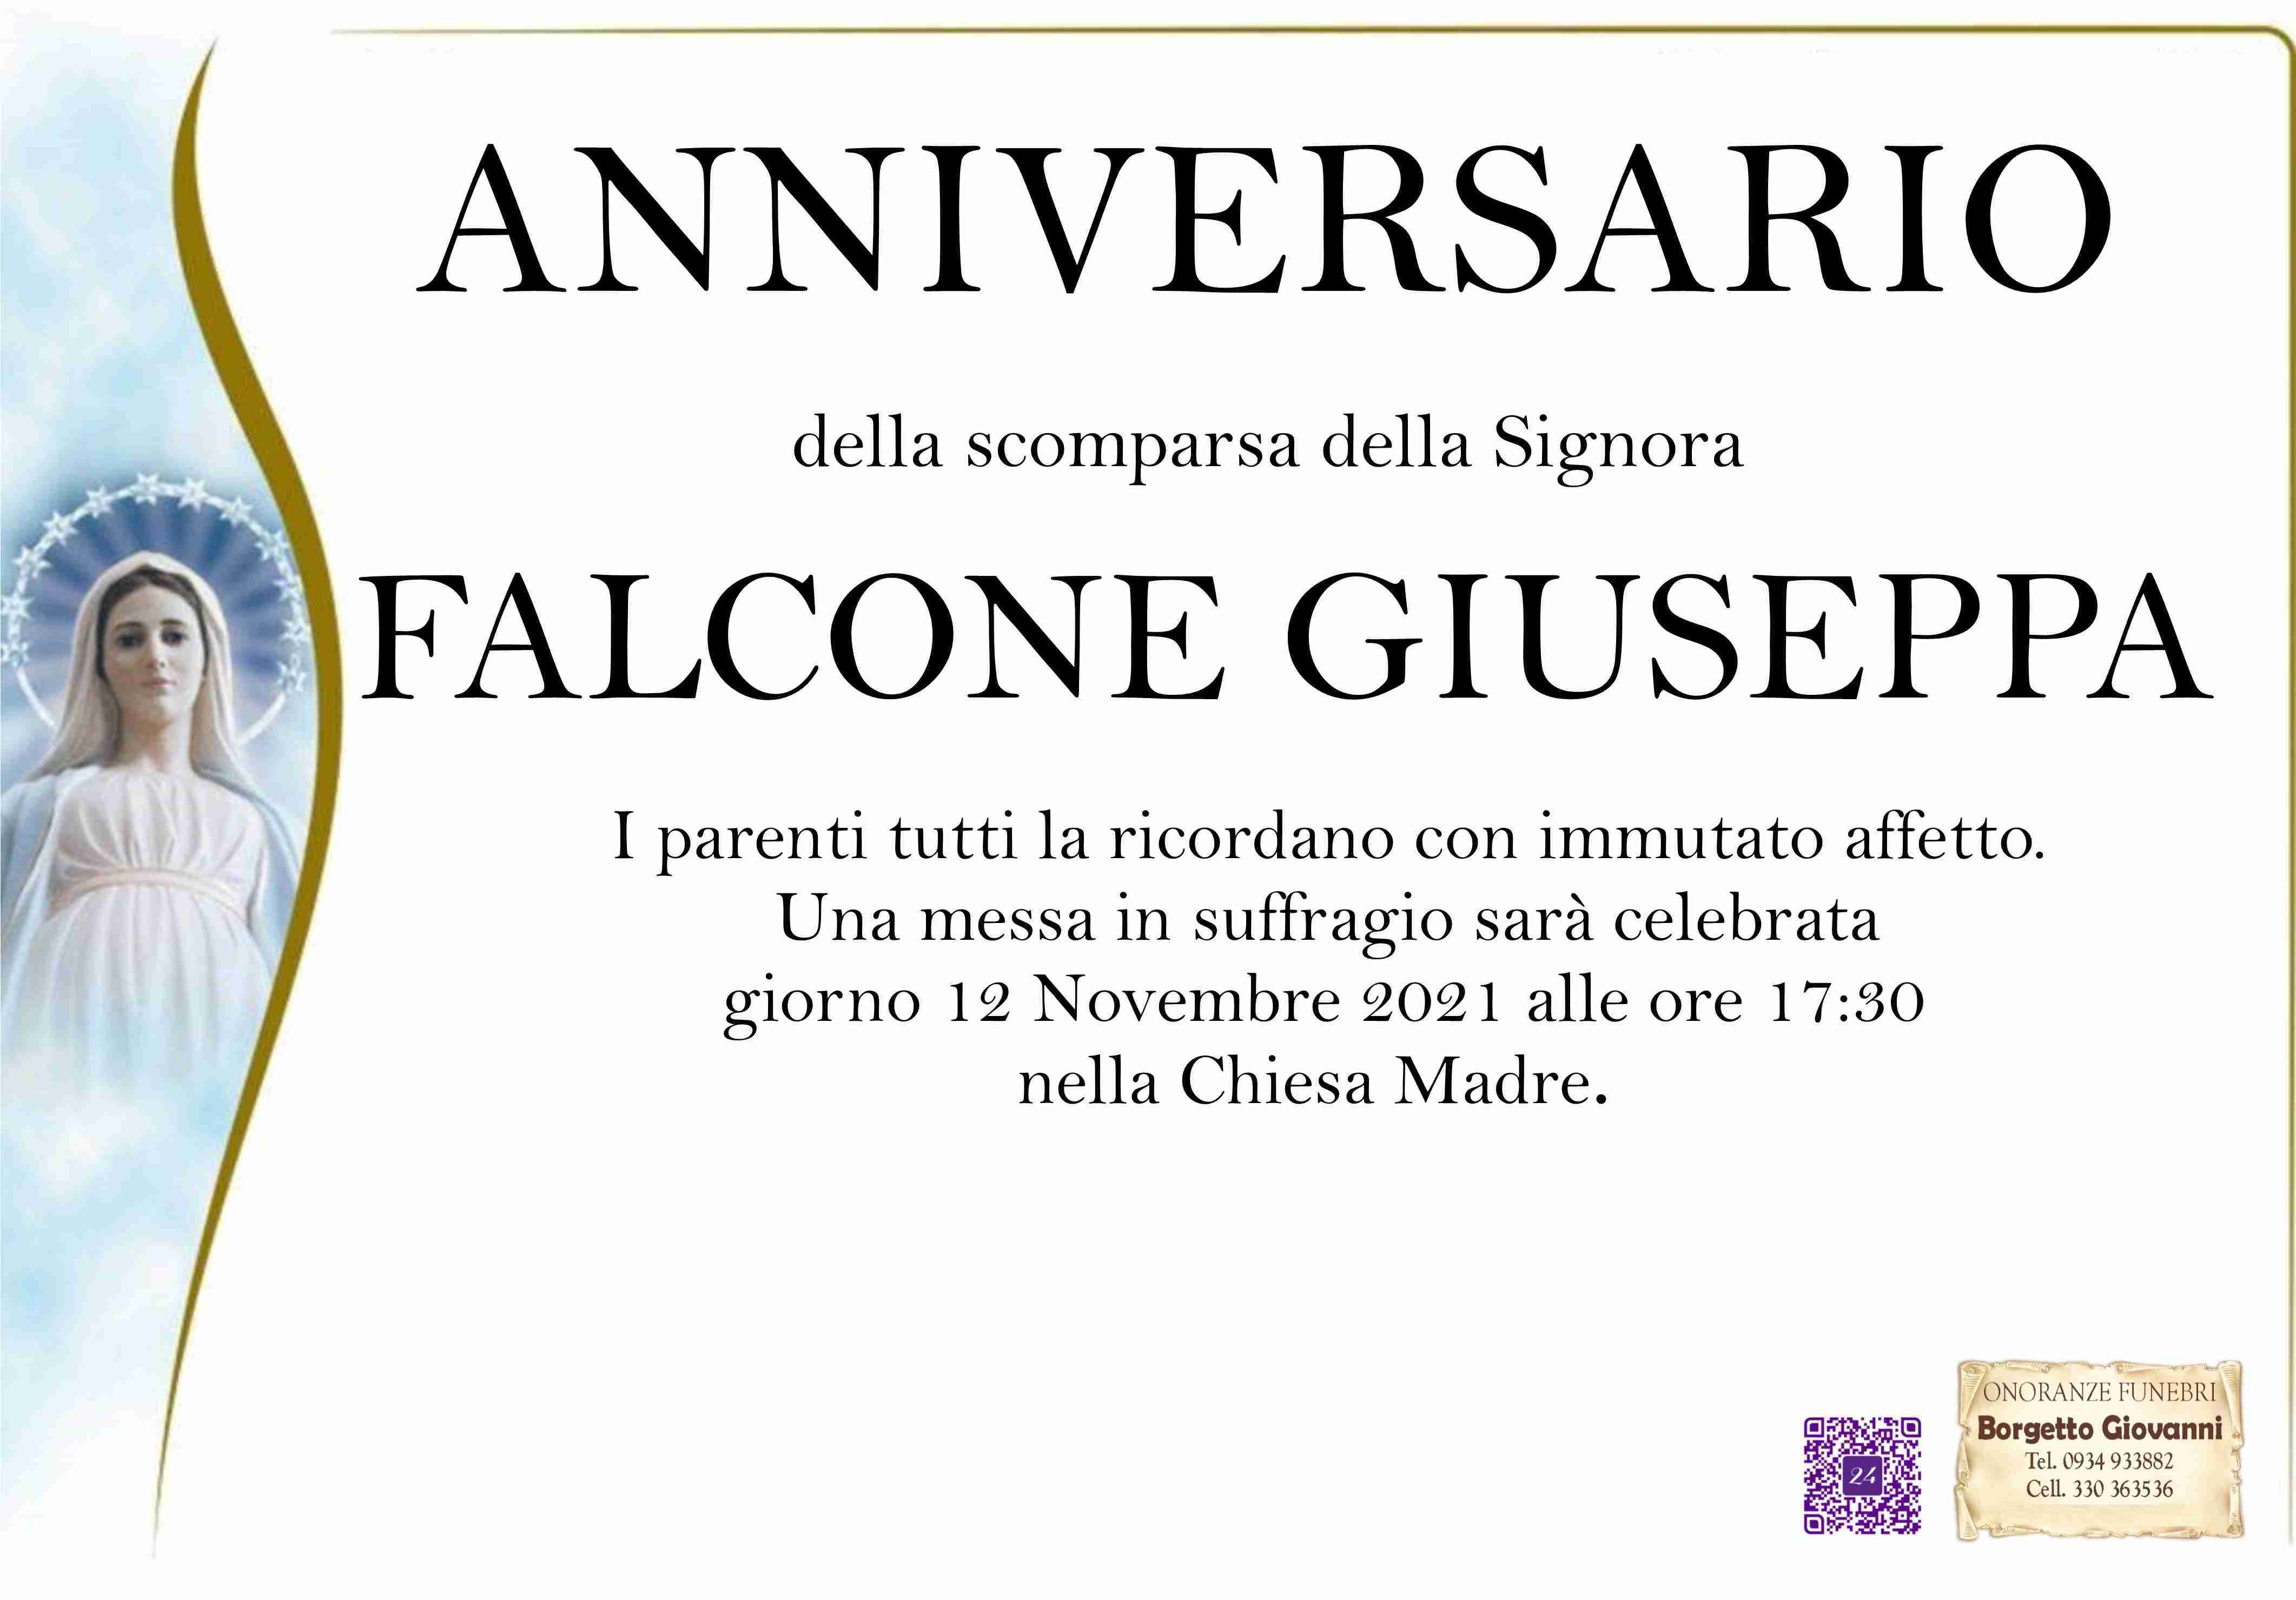 Giuseppa Falcone